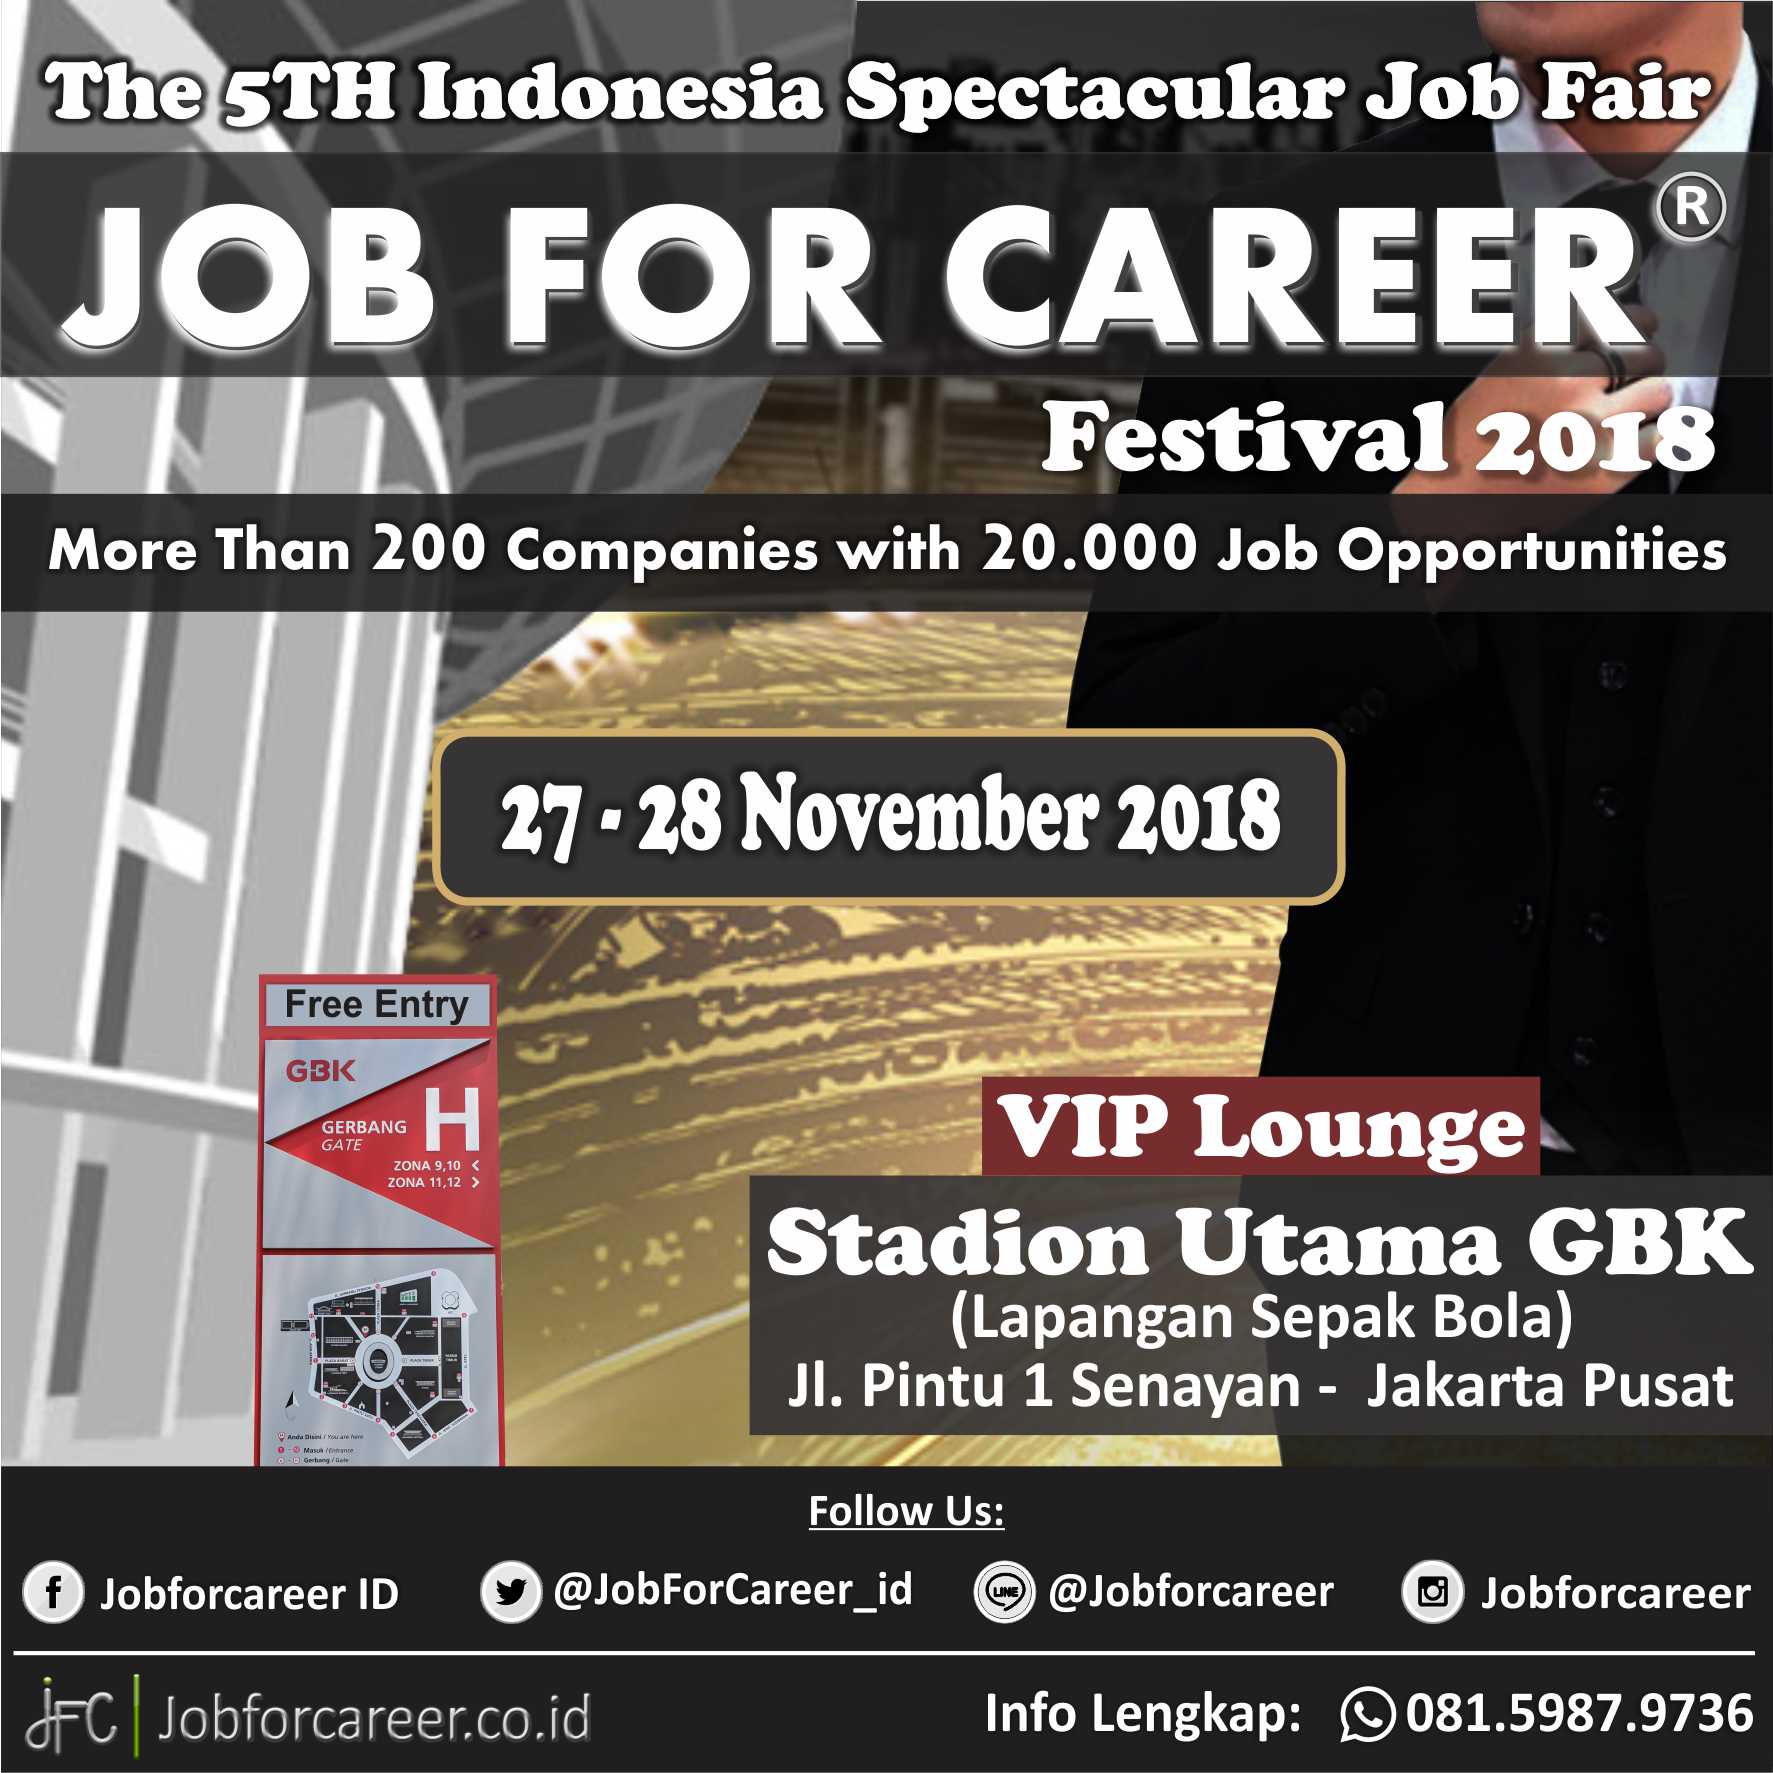 THE 5th INDONESIA SPECTACULAR JOB FAIR